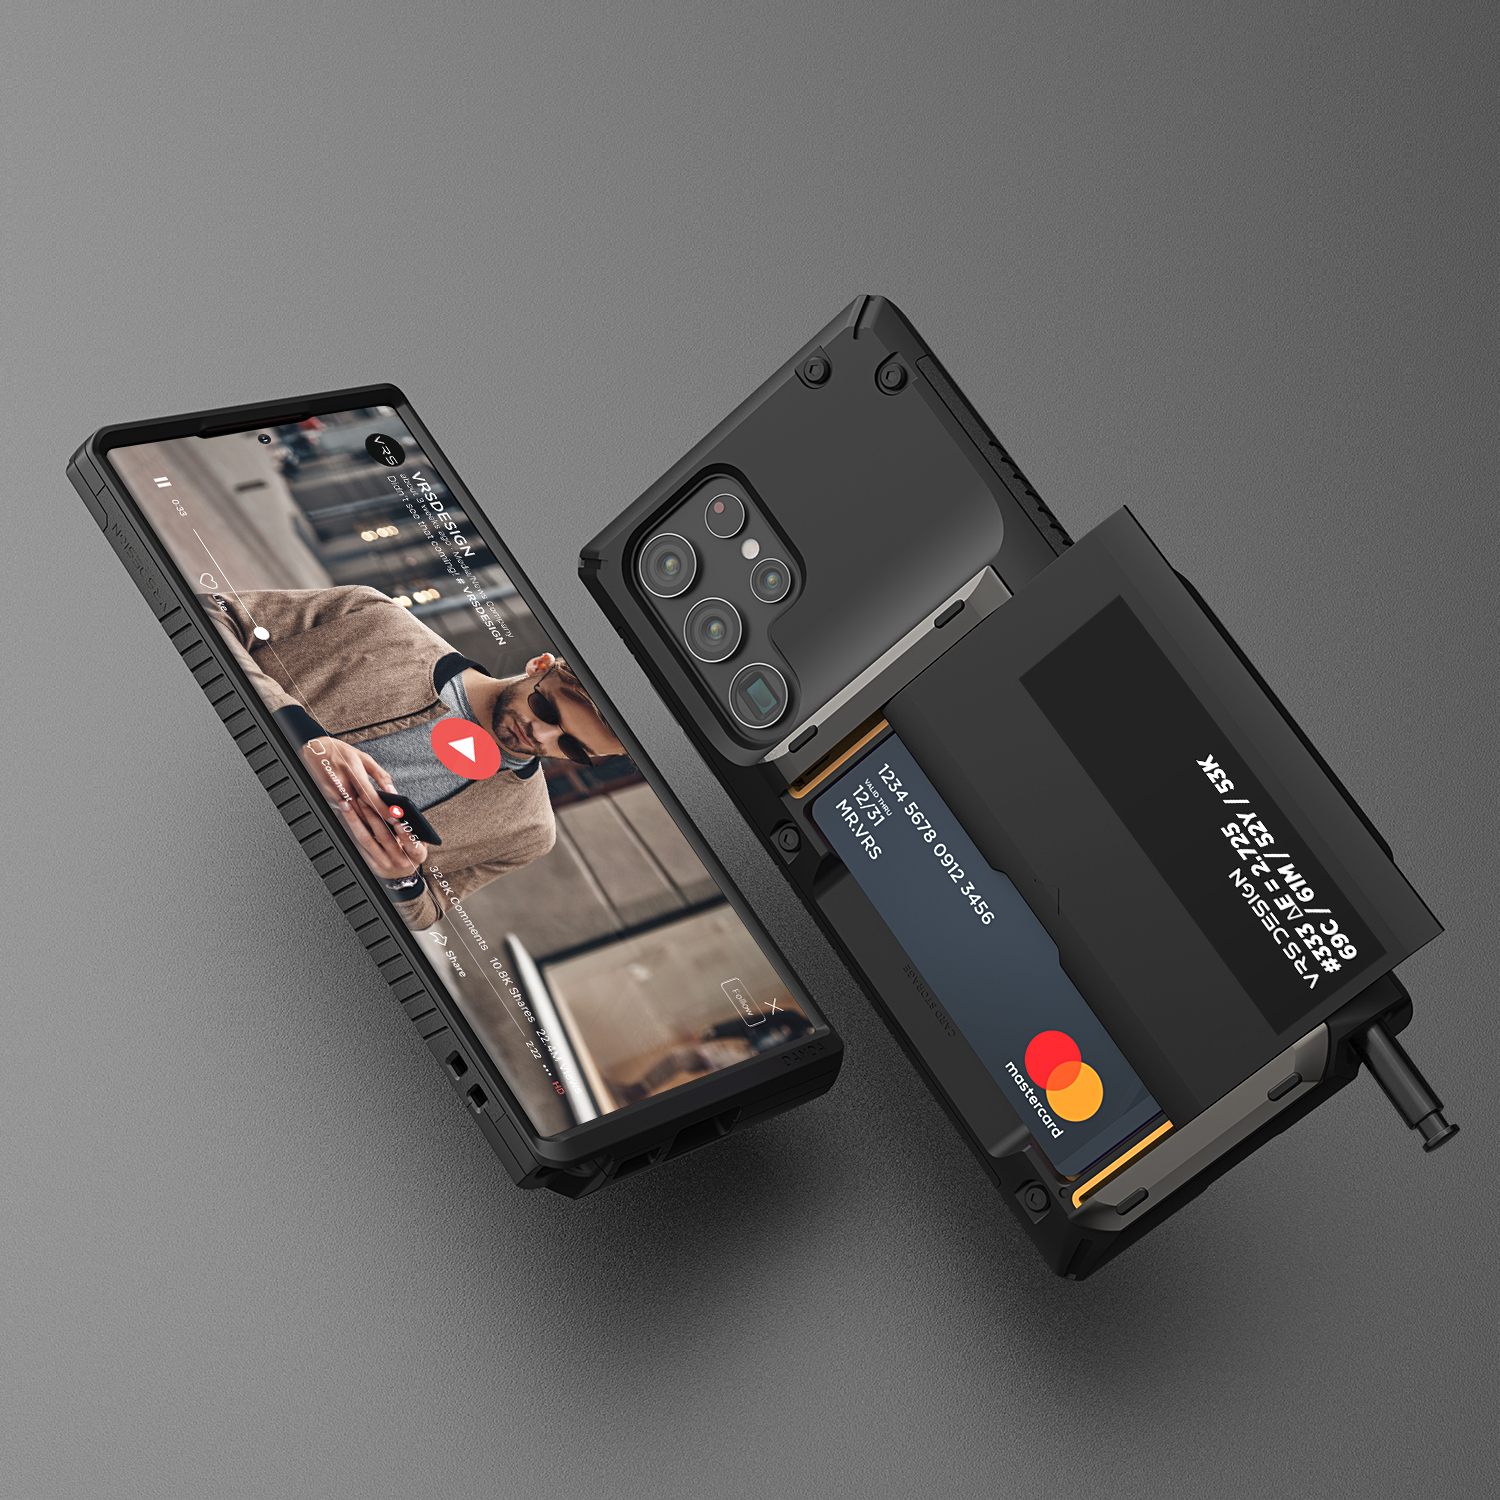 เคส VRS รุ่น Damda Glide Pro - Samsung Galaxy S22 Ultra - Black Label